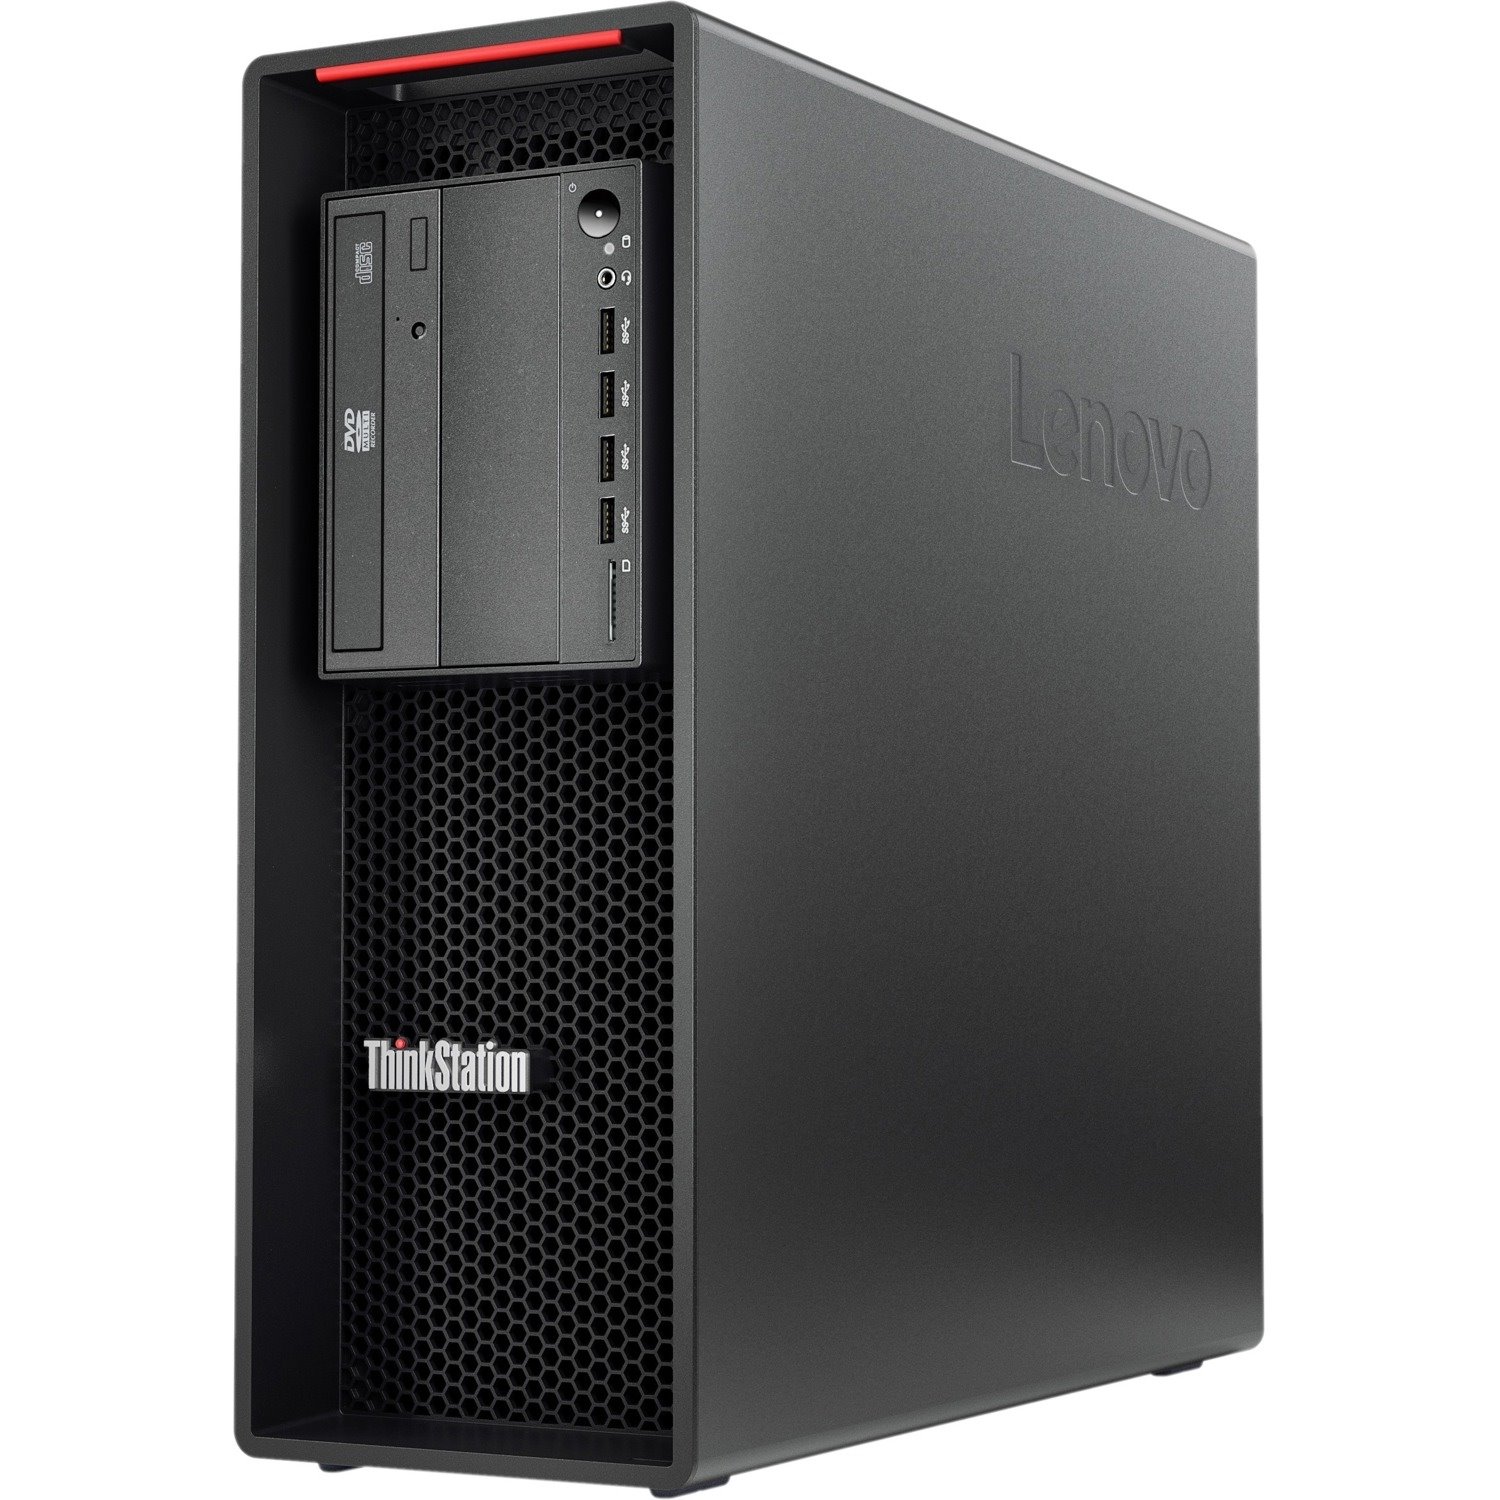 Lenovo ThinkStation P520 30BE00RJCA Workstation - 1 x Intel Xeon W-2223 - 32 GB - 512 GB SSD - Tower